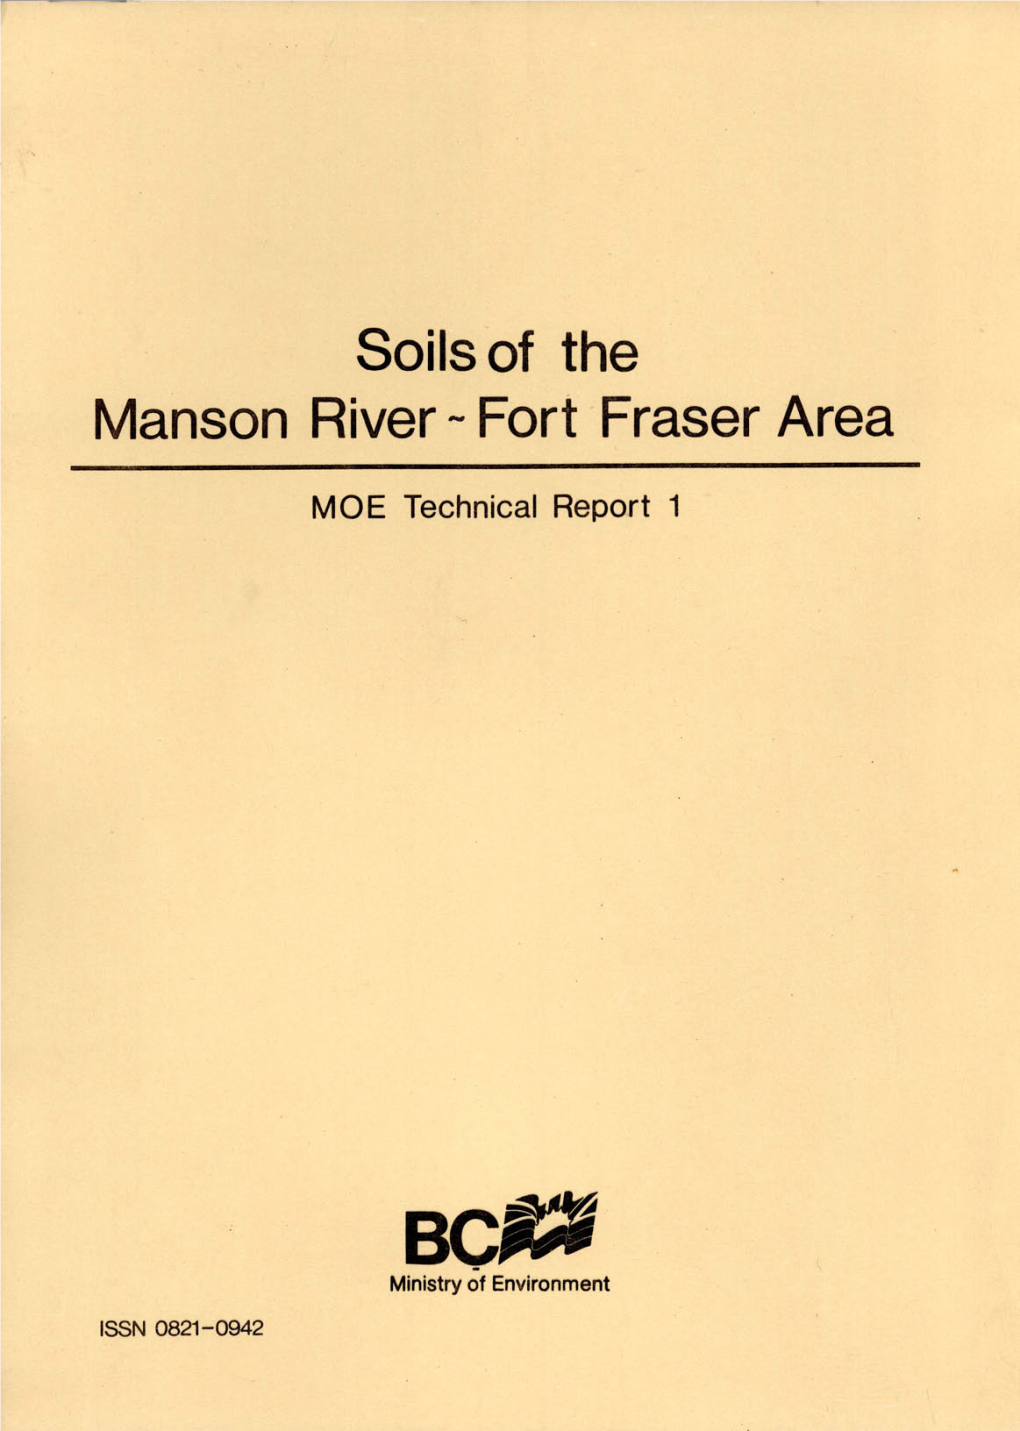 Fort Fraser Area